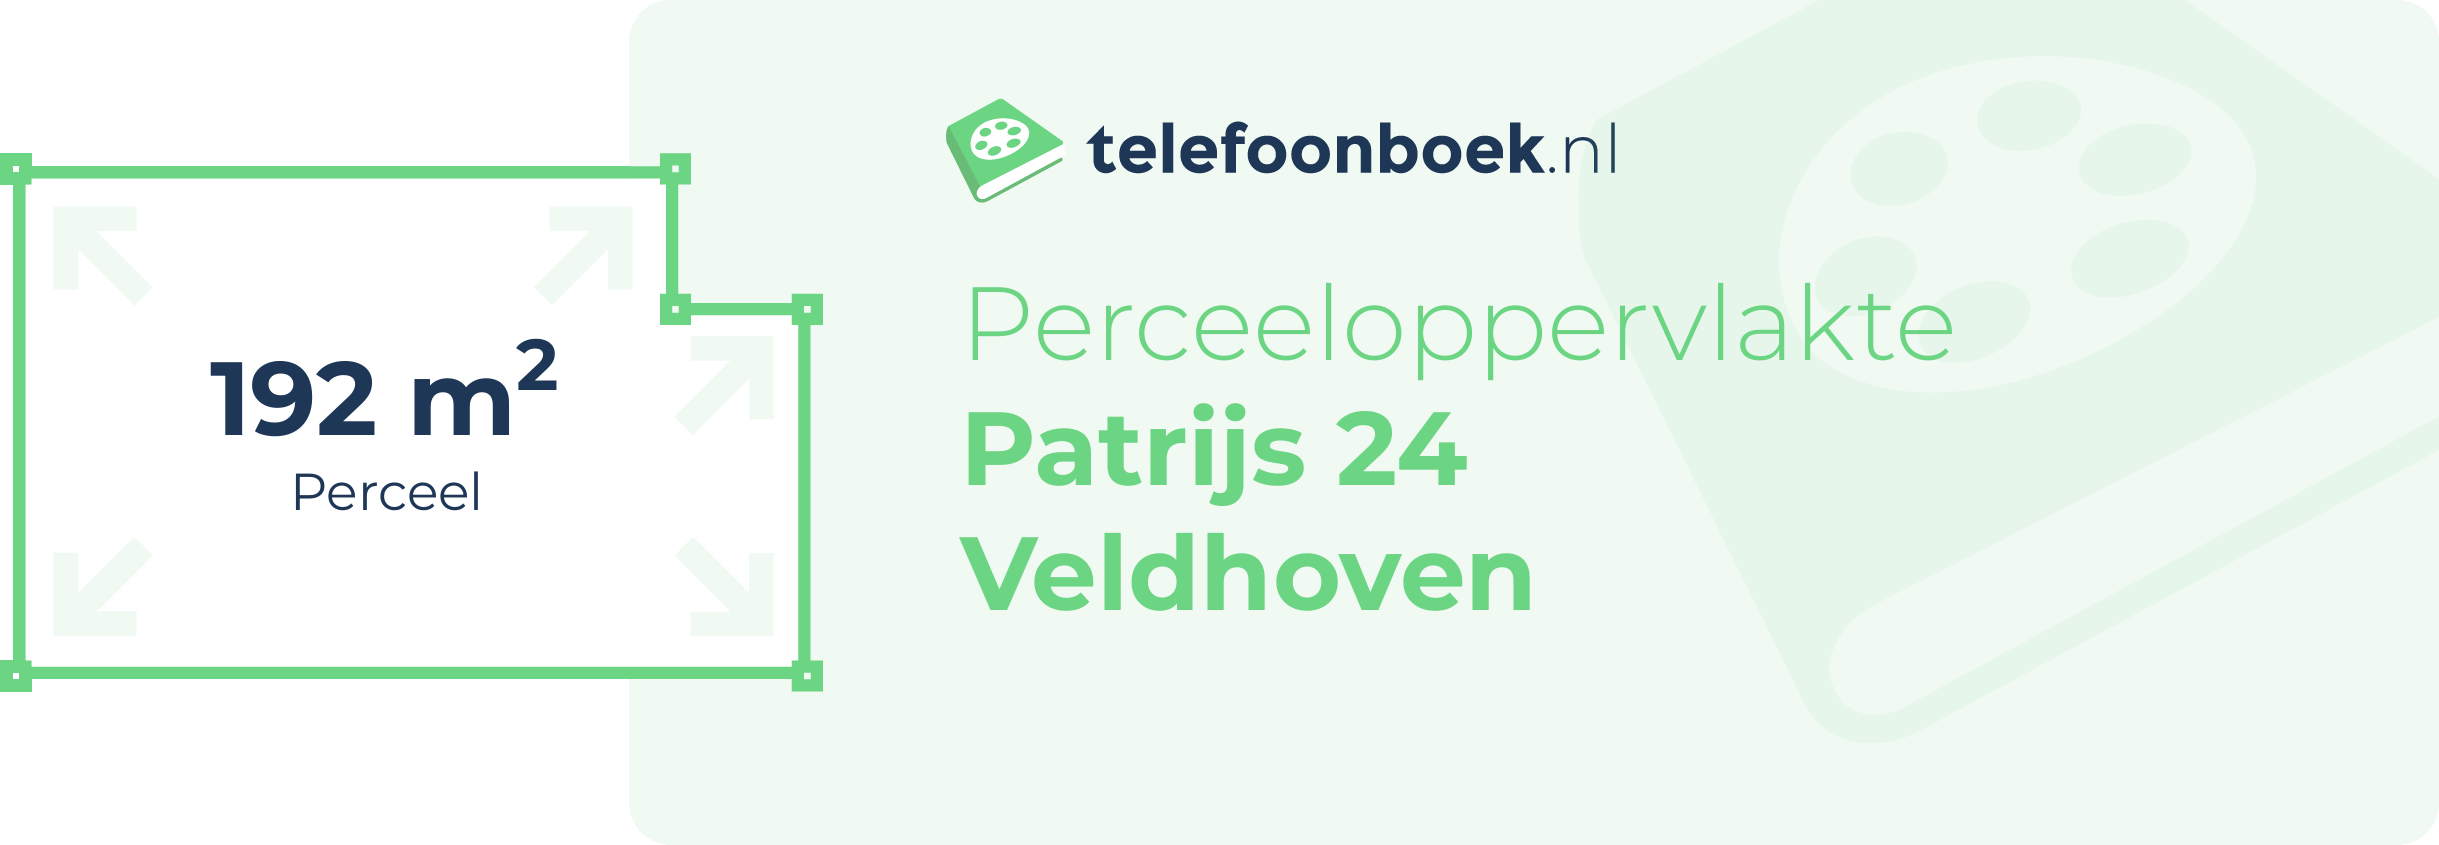 Perceeloppervlakte Patrijs 24 Veldhoven